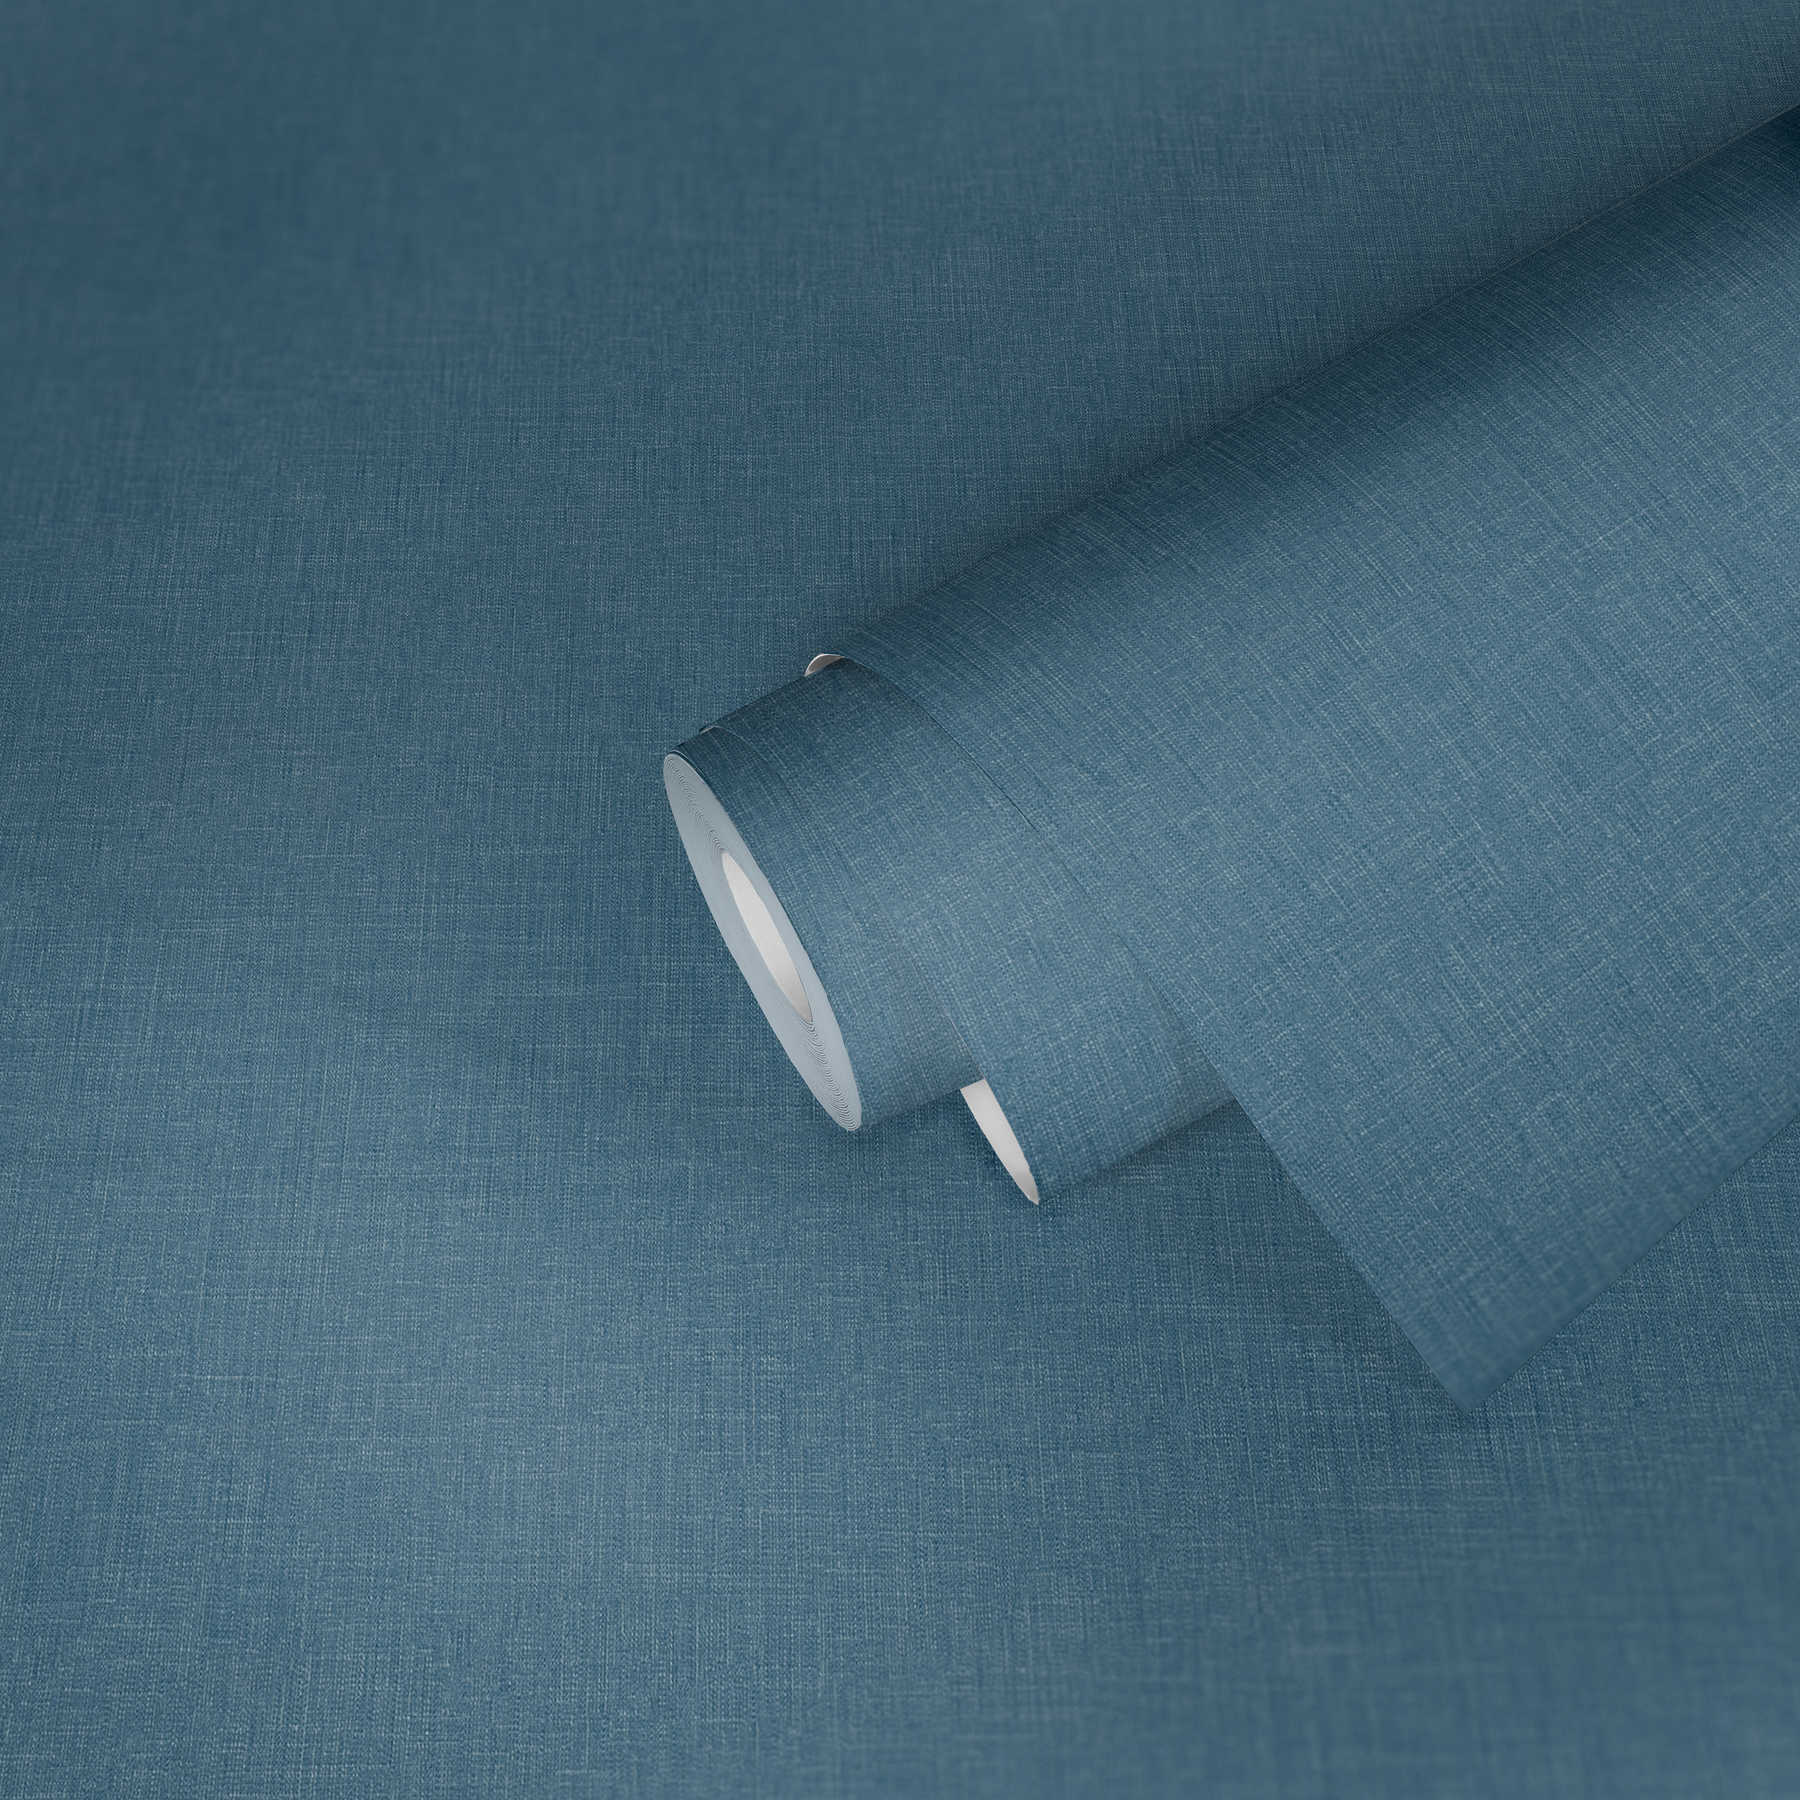             Petrol blue wallpaper mottled textile design scandi look
        